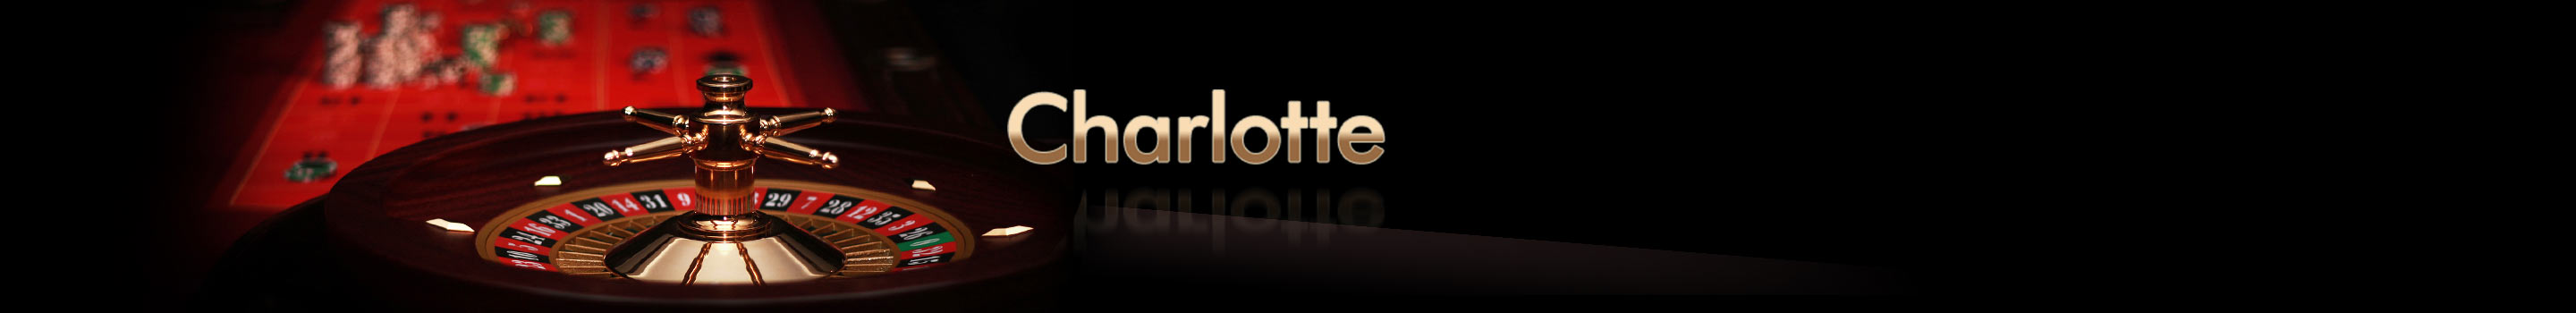 Charlotte rulett rendszer